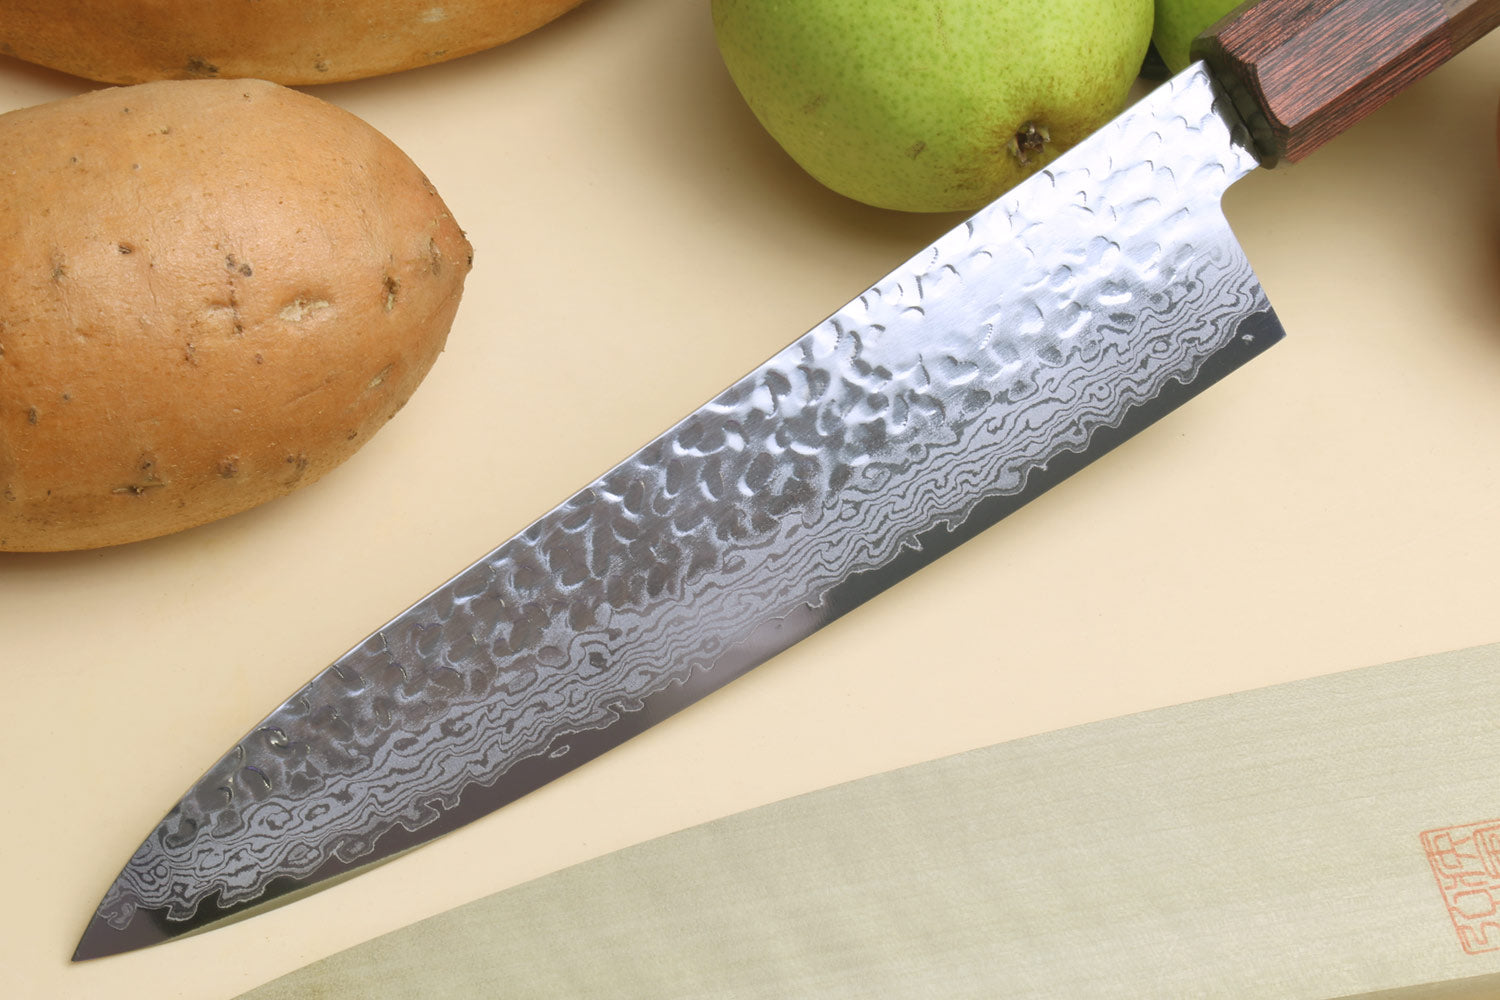 Best Sharp Kitchen Knives Handmade Japanese Chef Knife VG10 Damascus Steel